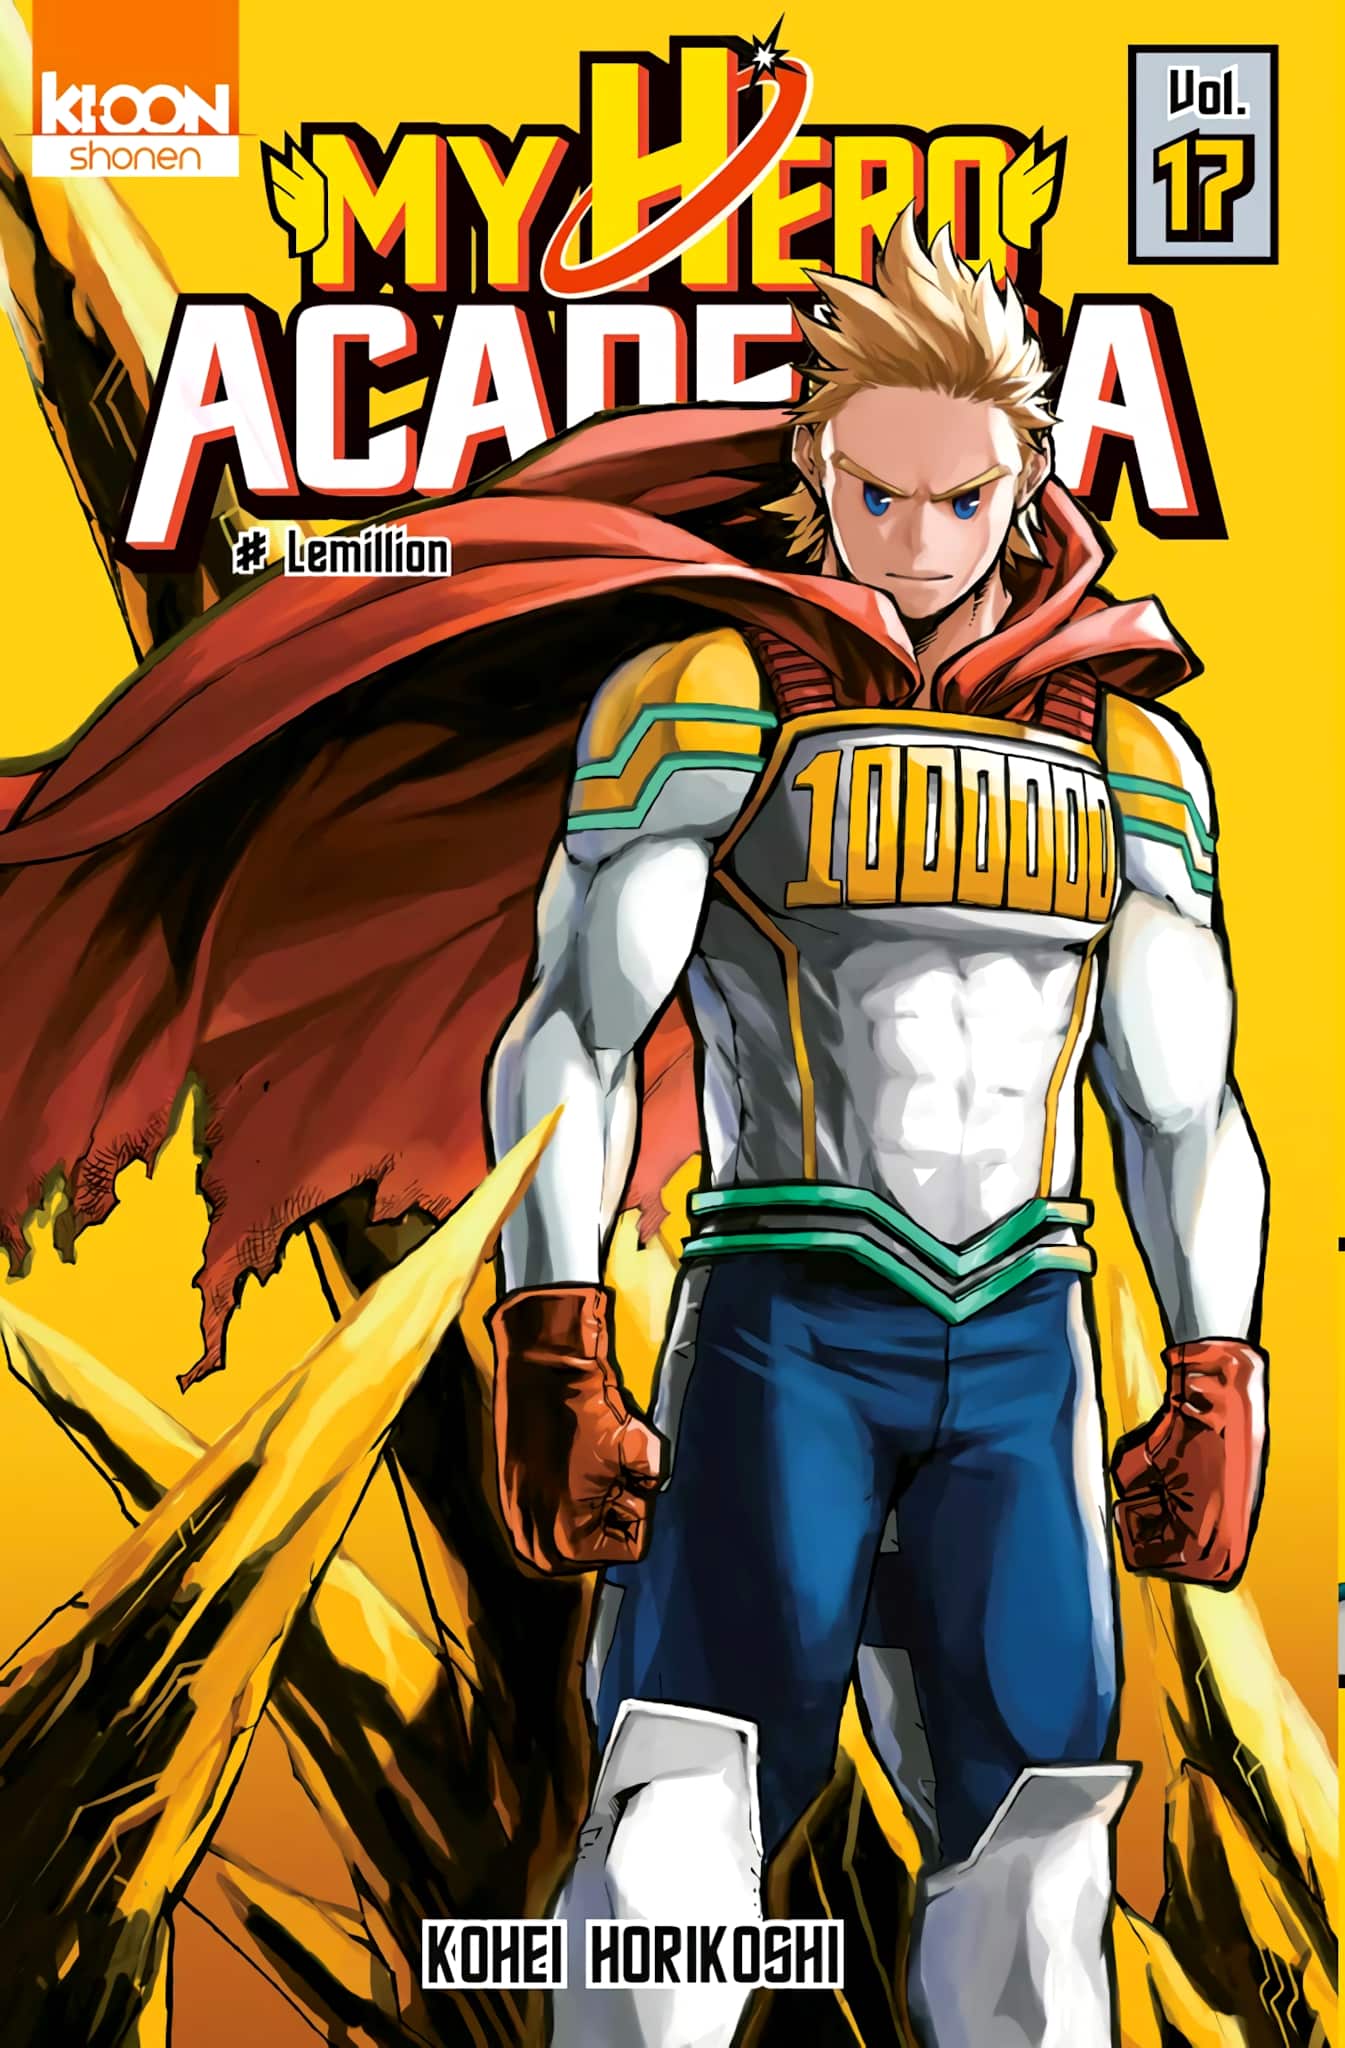 Tome 17 du manga My Hero Academia